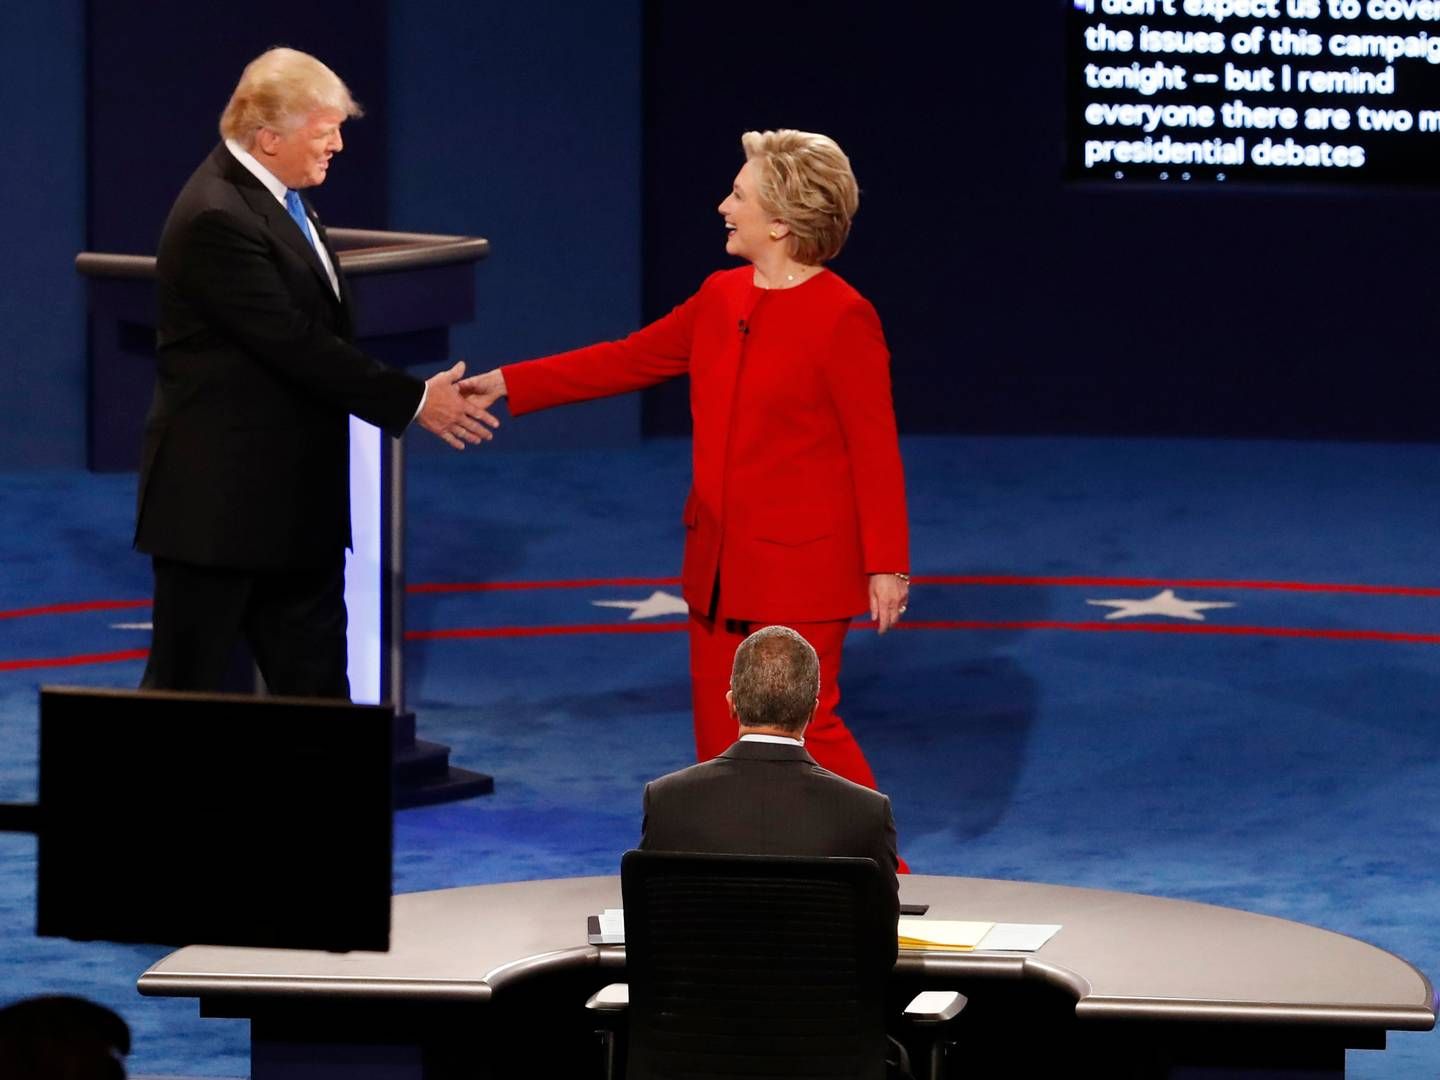 Billede fra sidste uges tv-debat mellem Donald Trump og Hillary Clinton. | Foto: Mary Altaffer/AP/Polfoto